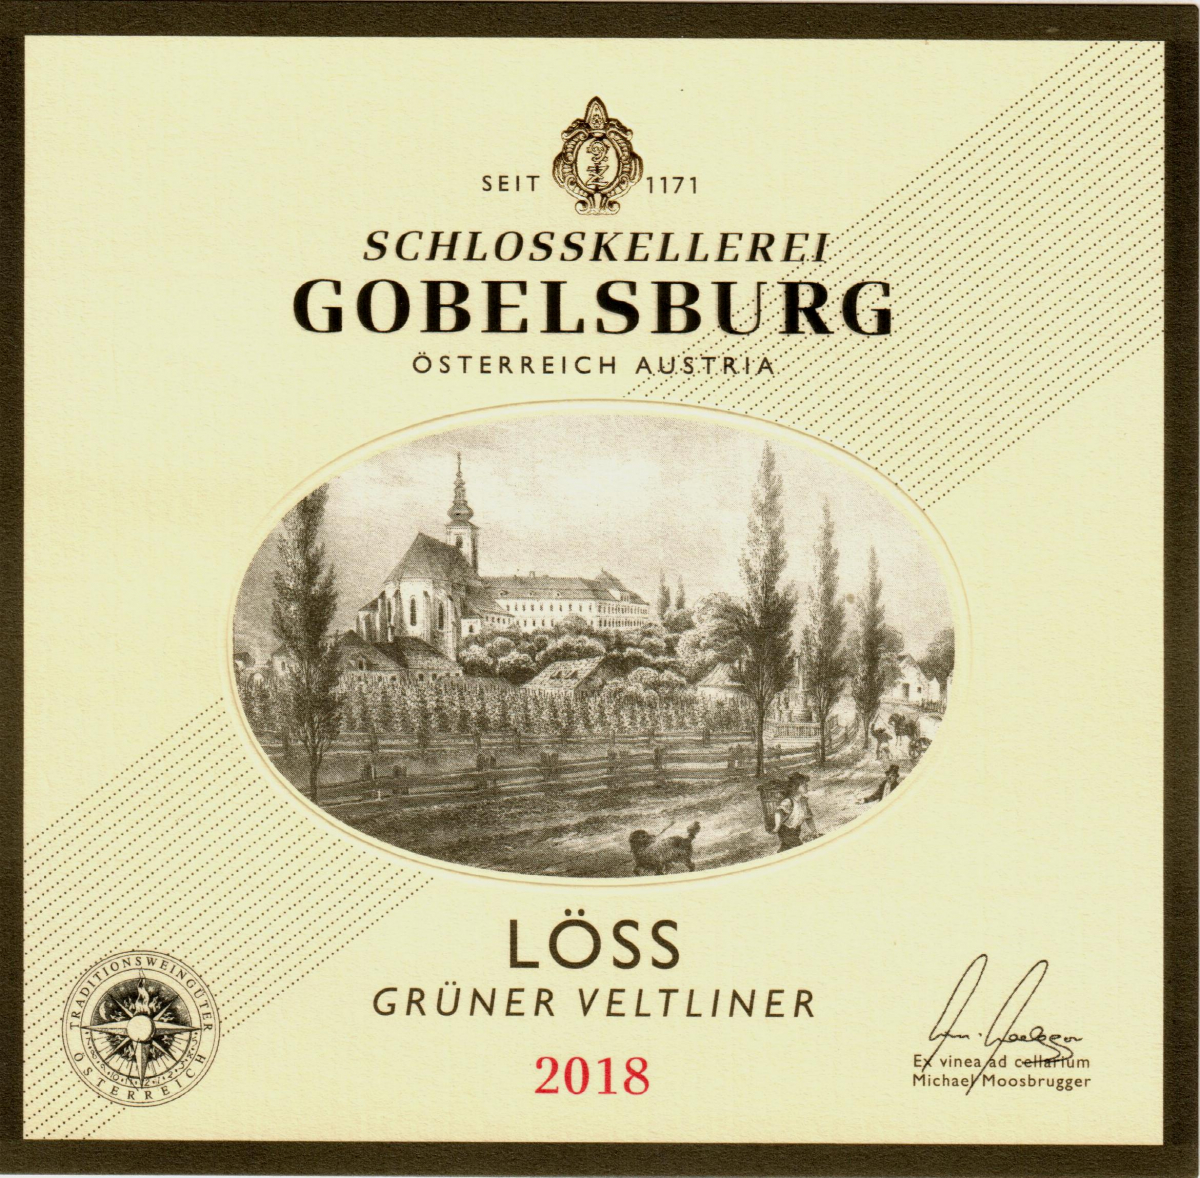 Weinlinie Schlosskellerei Gobelsburg